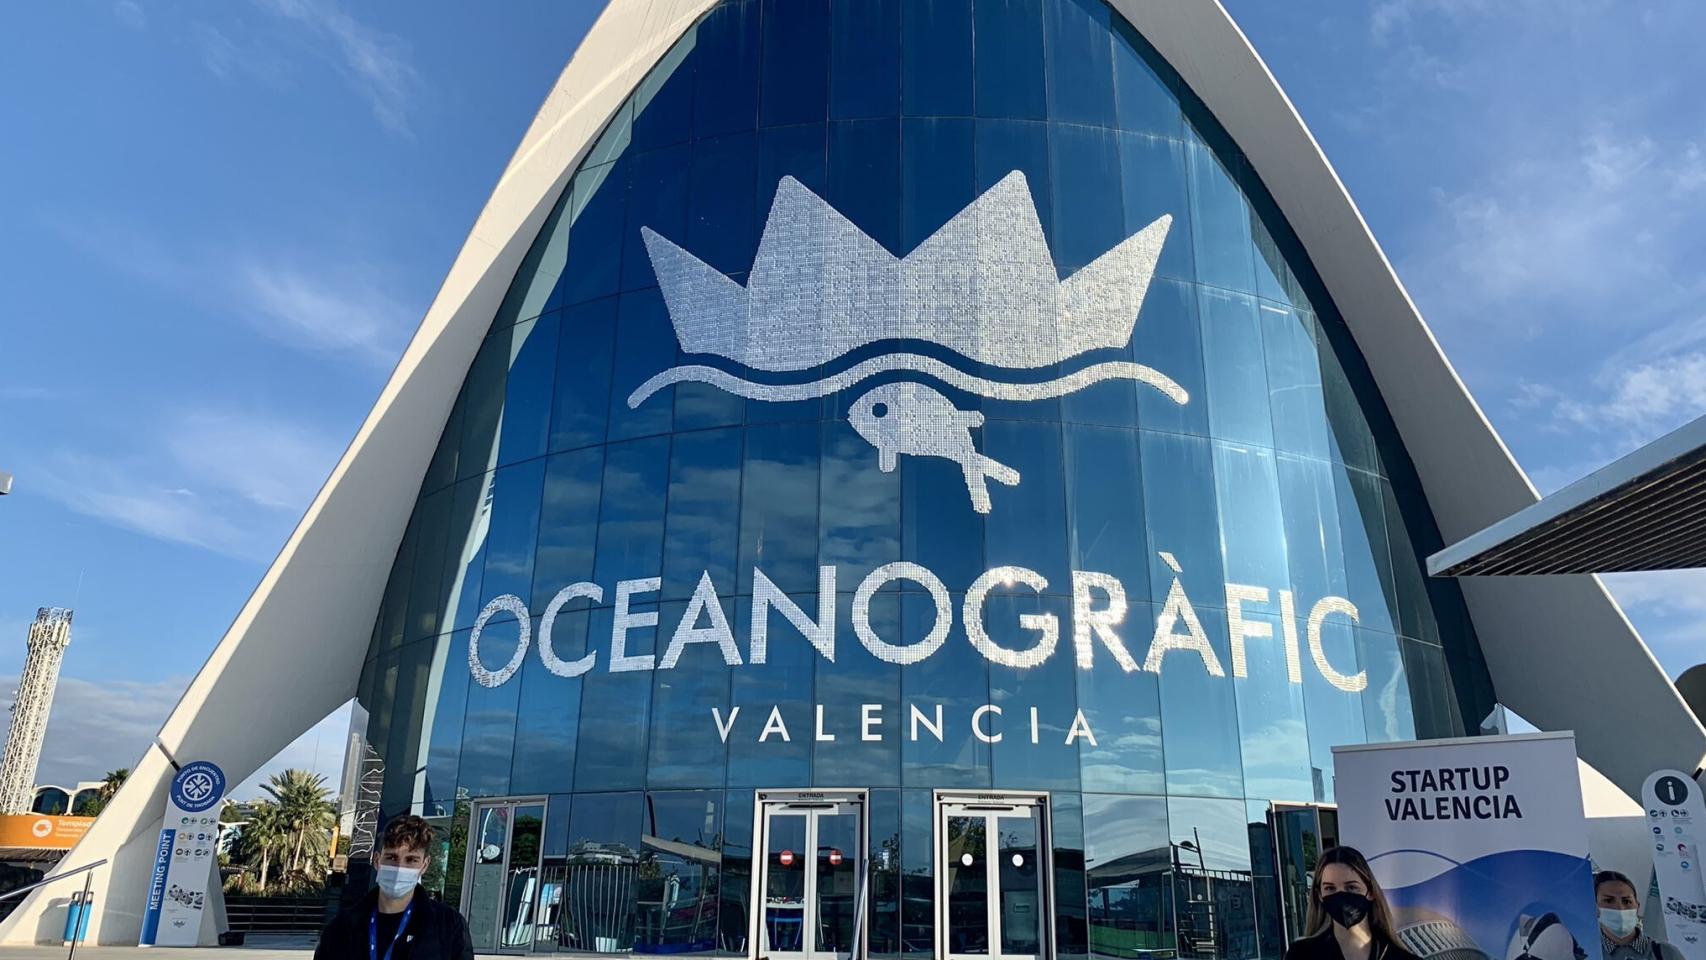 El Oceanográfico de Valencia es el emplazamiento de excepción para la gran fiesta del ecosistema startup valenciano este 15 y 16 de diciembre.